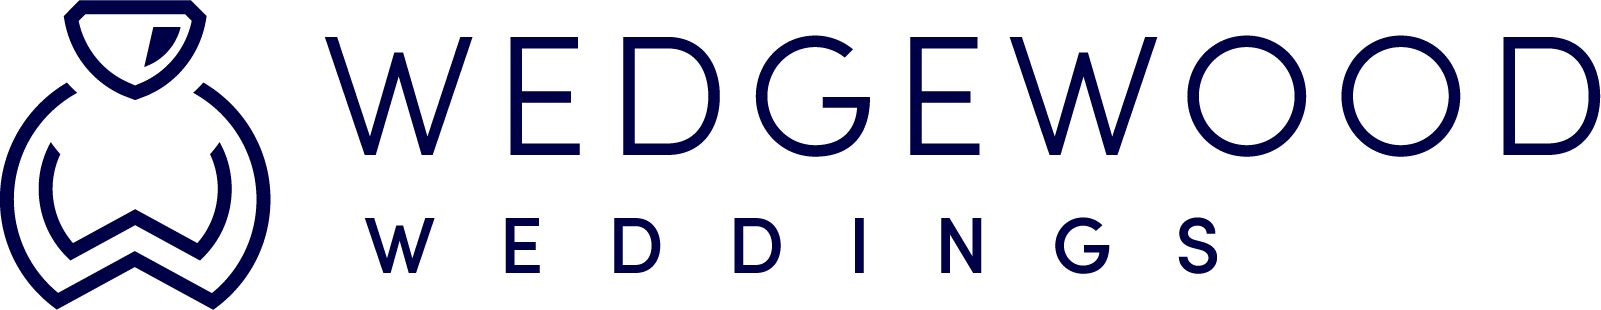 Wedgewood Weddings & Events logo